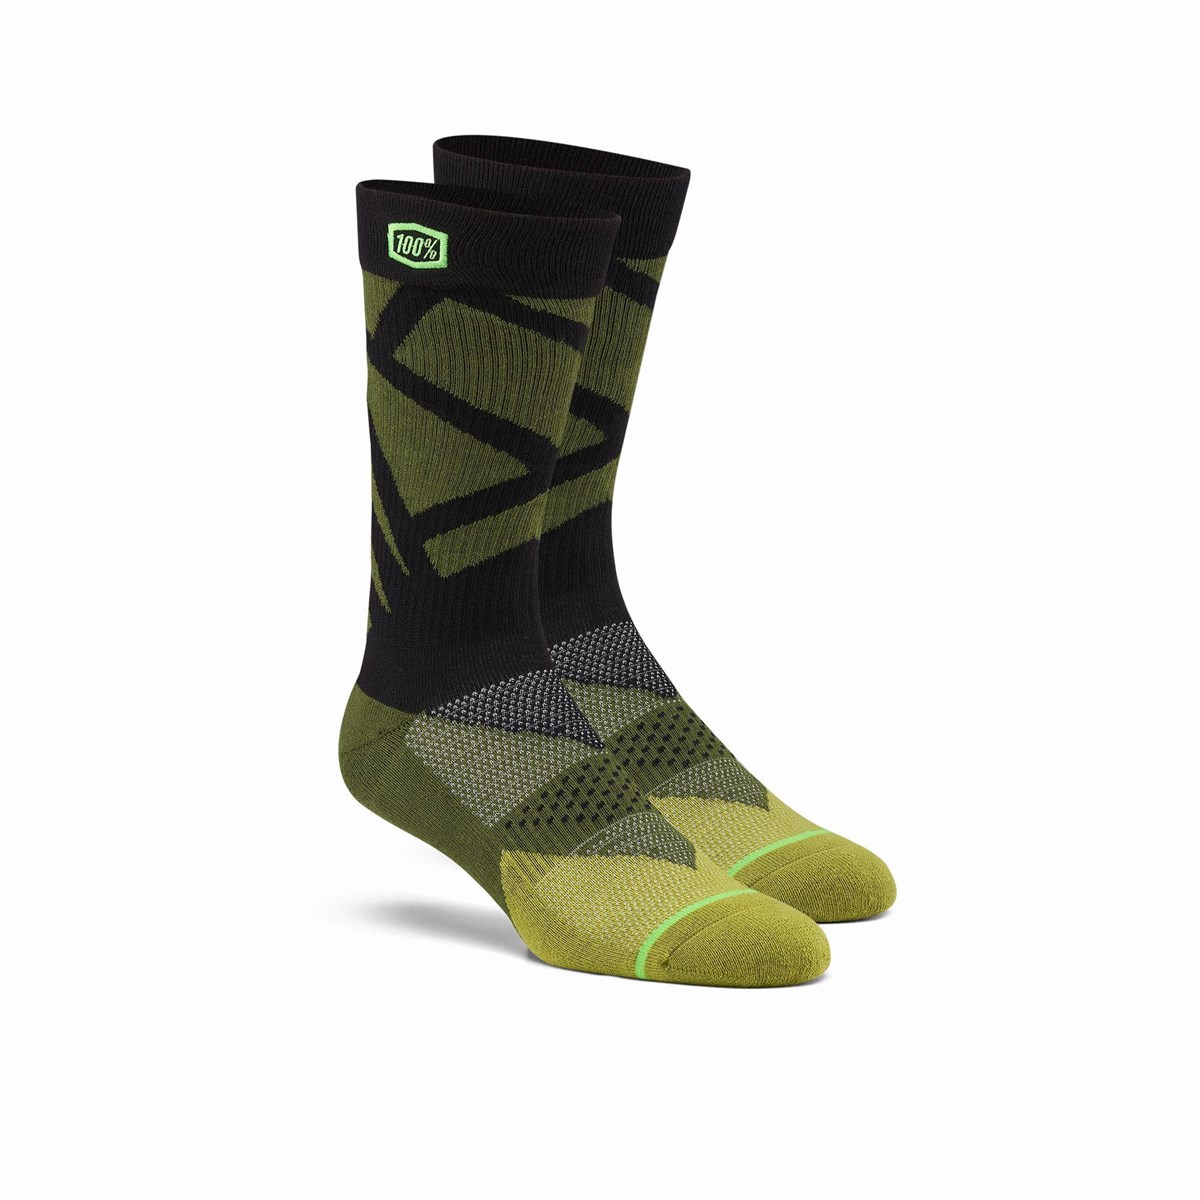 100% Rift Athletic Socks product image